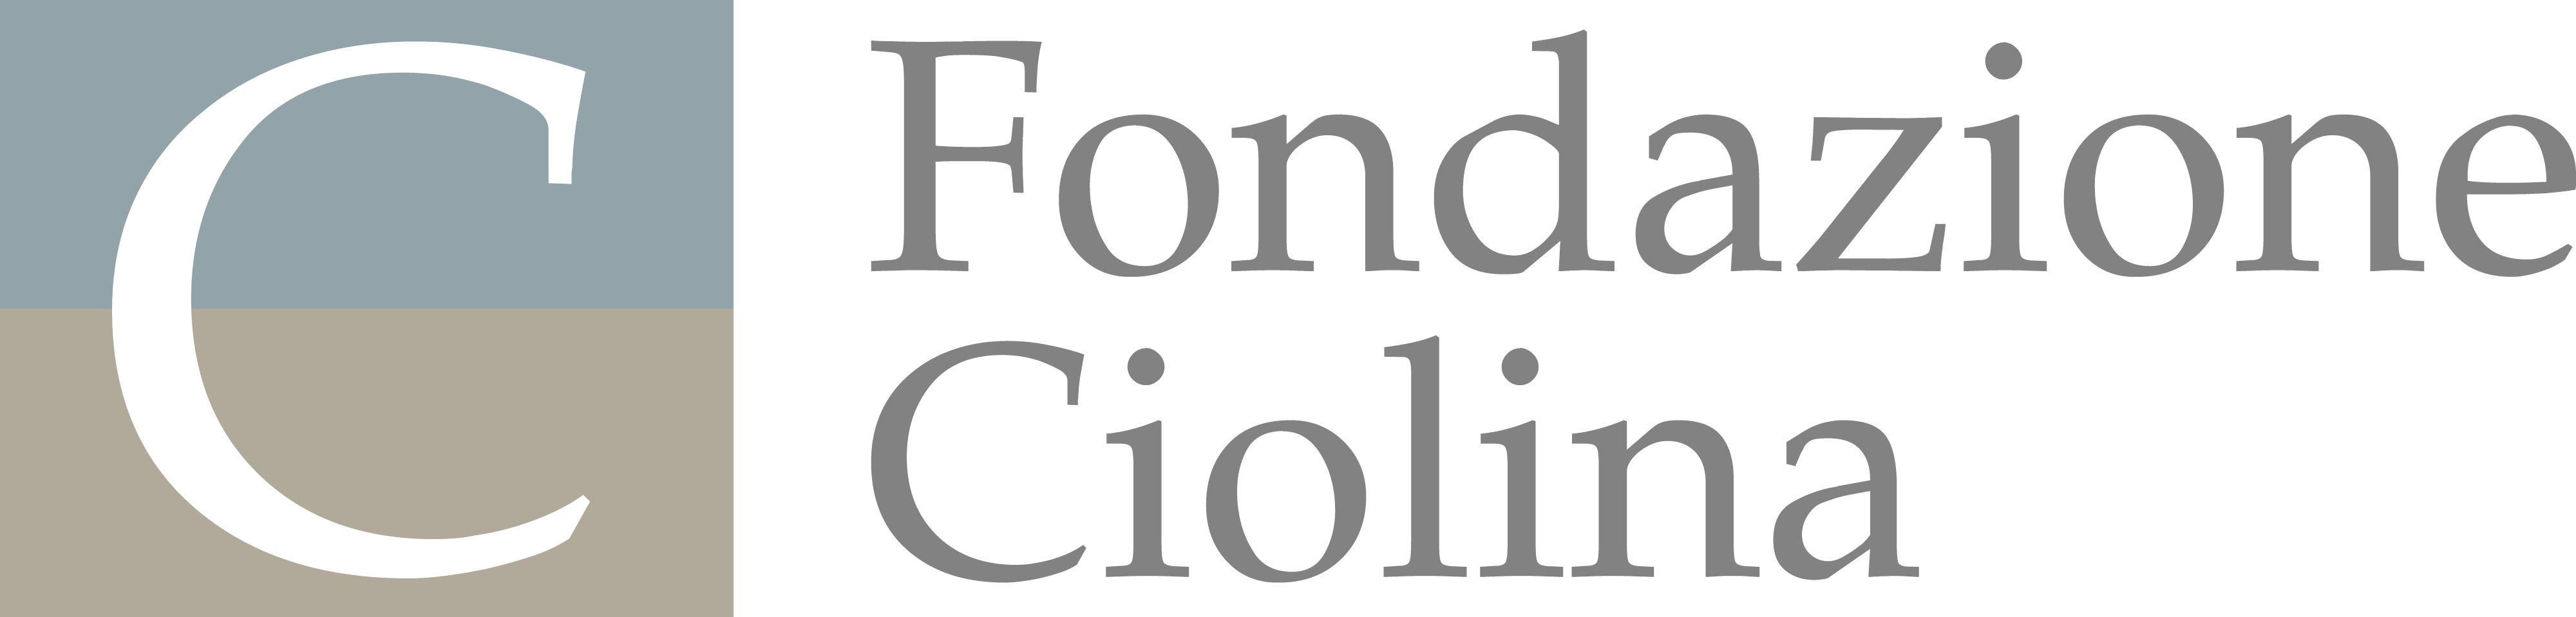 Fondazione Ciolina